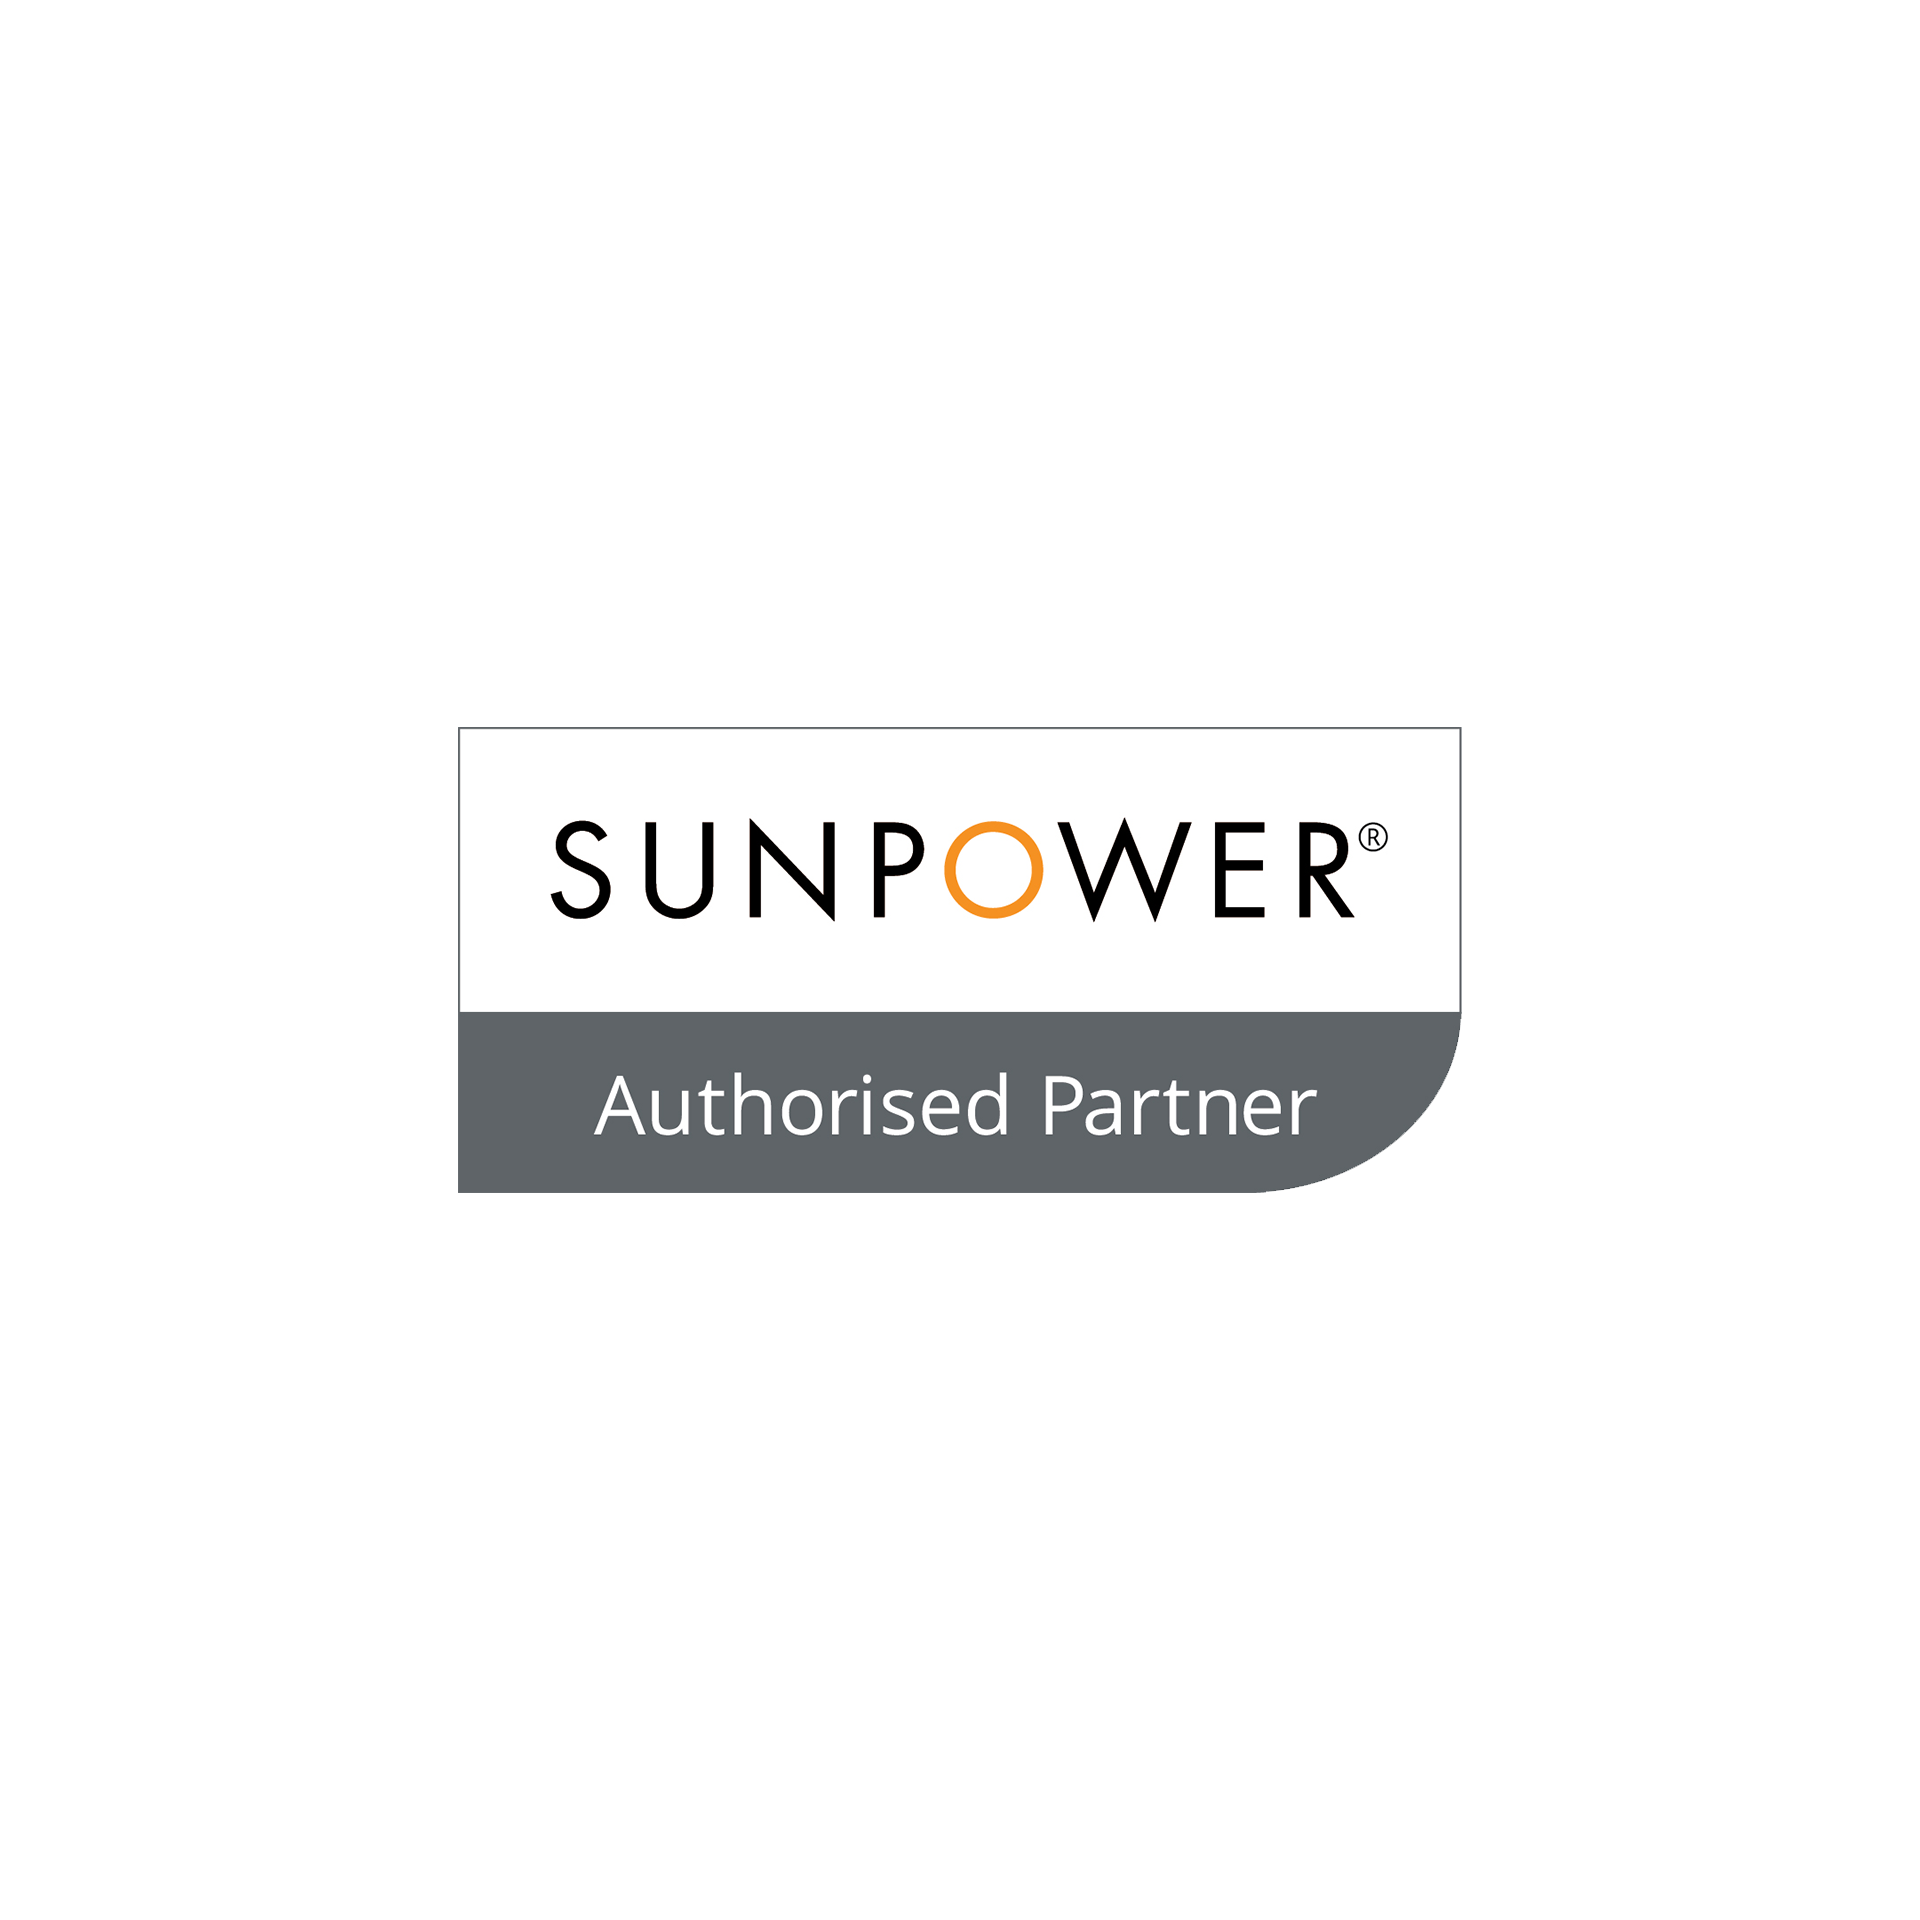 Sunpower is an authorised partner of sunpower.